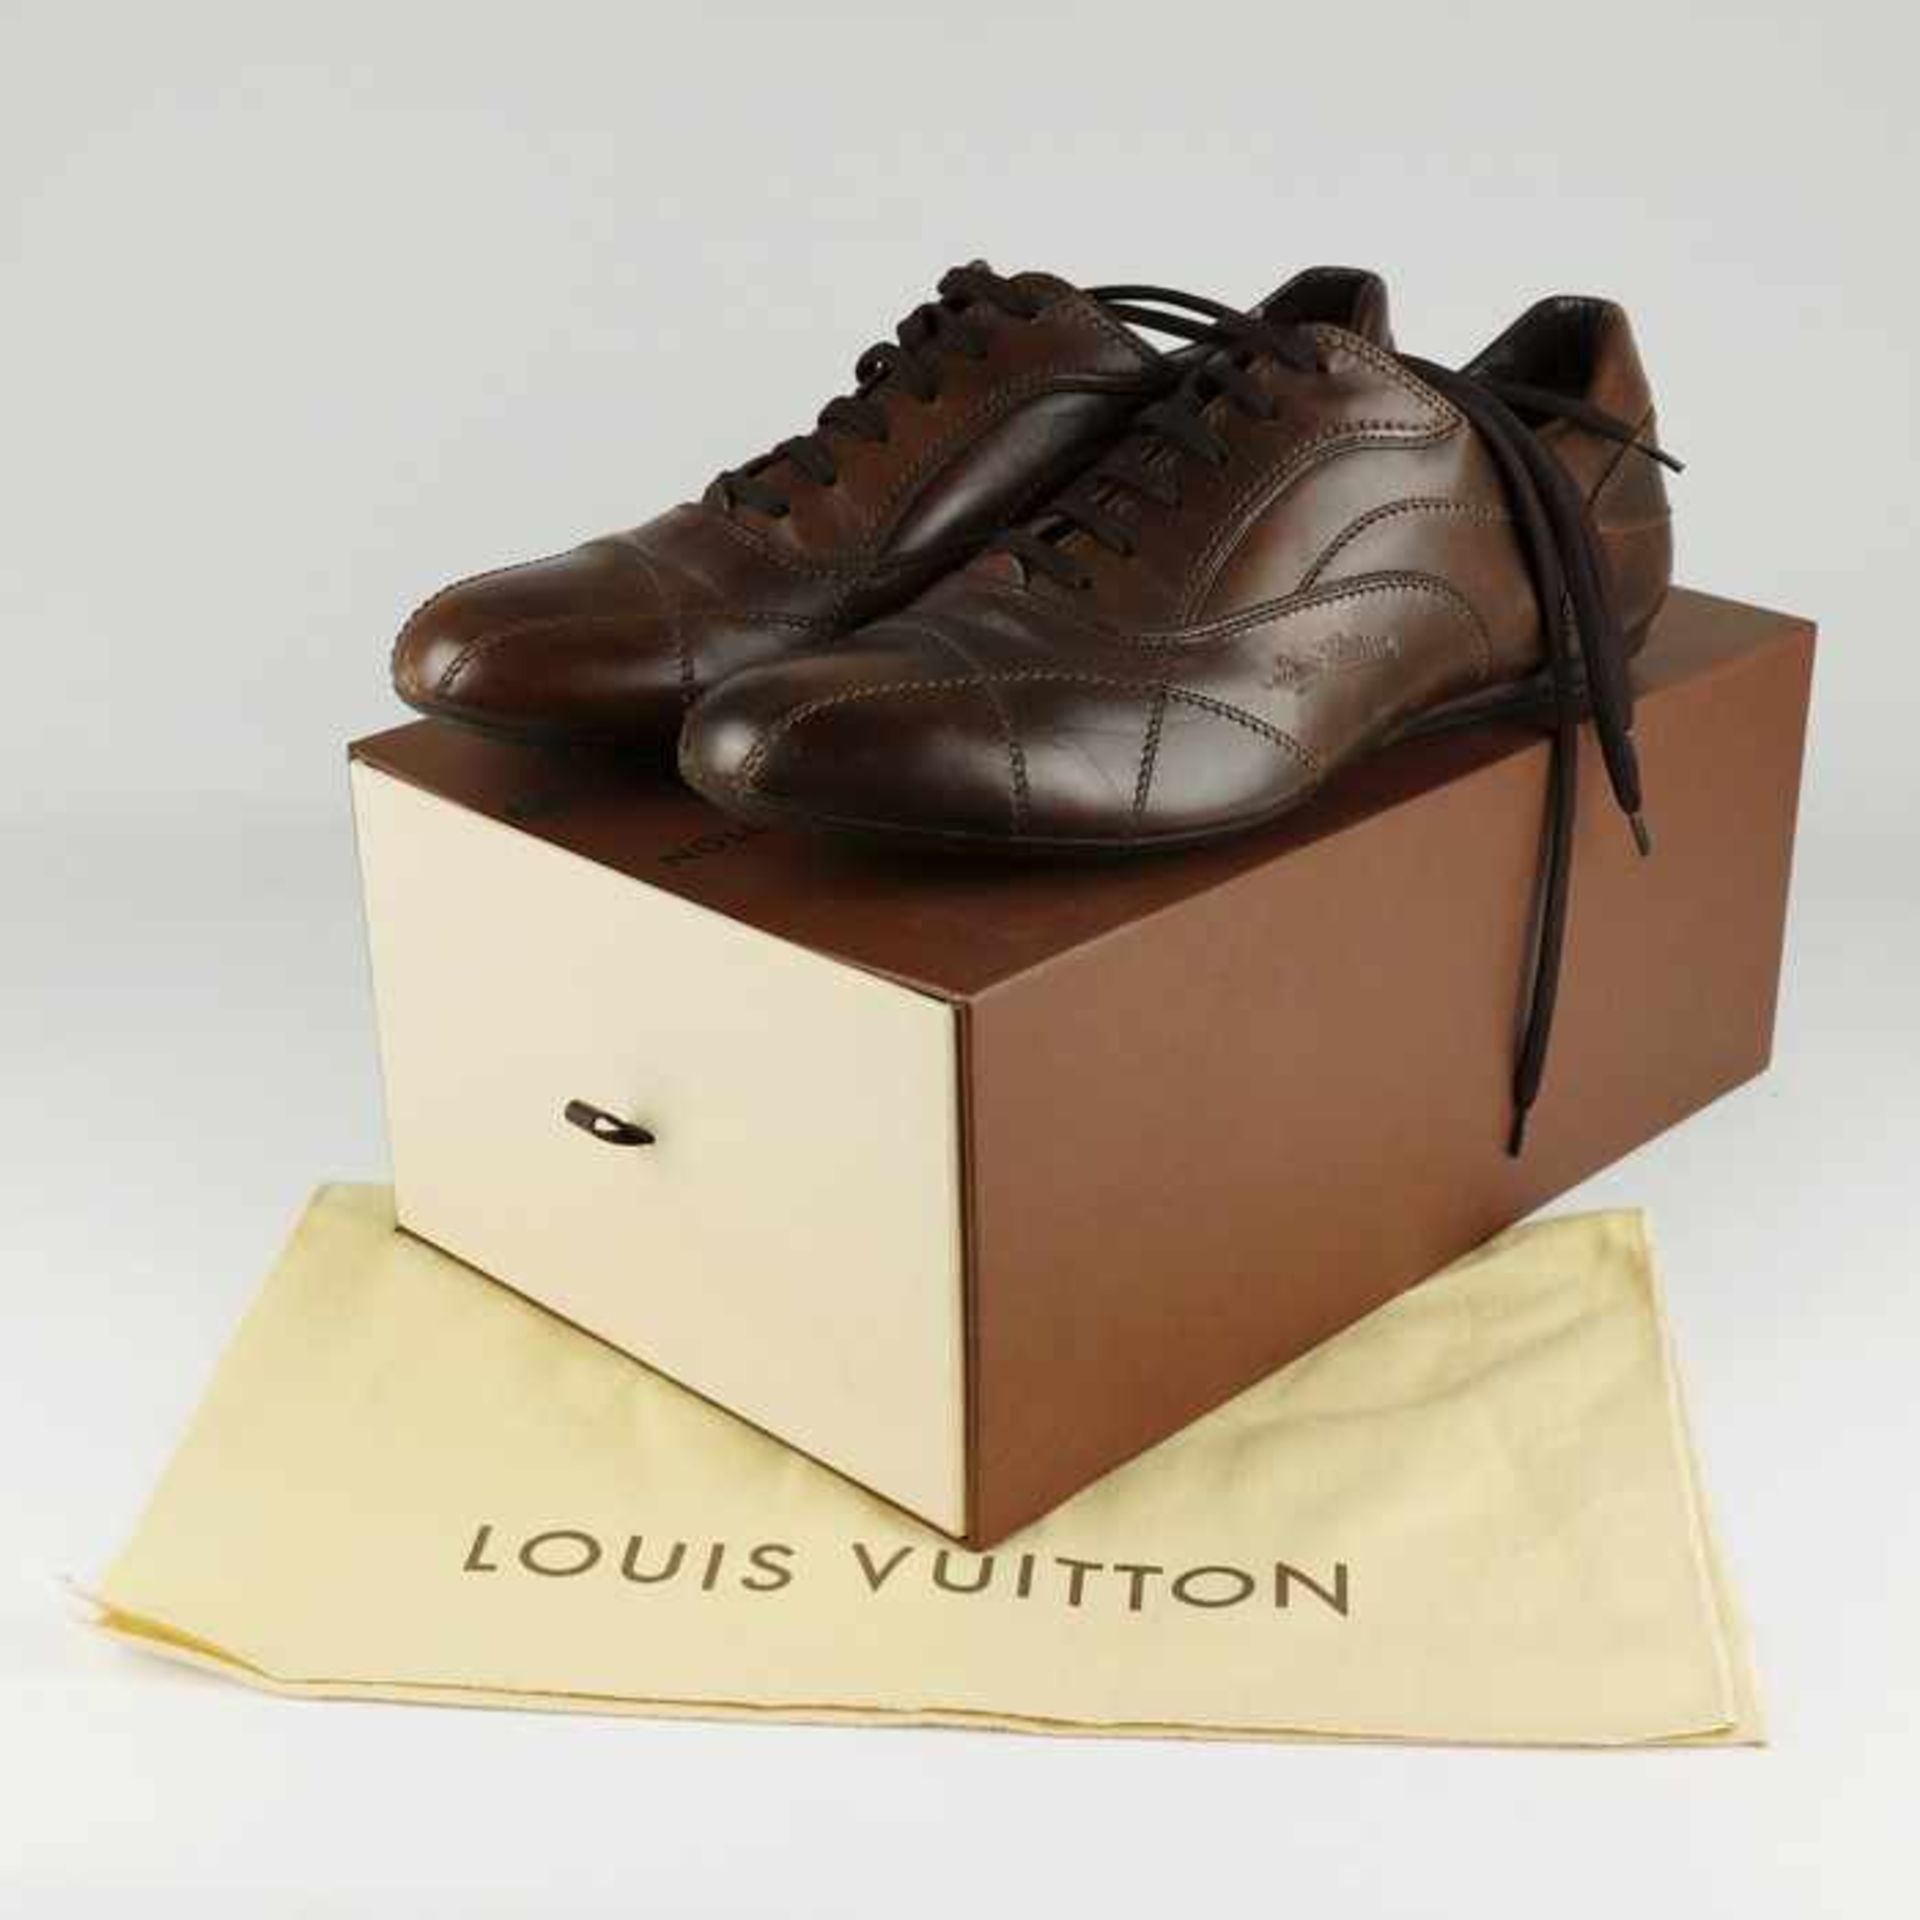 Louis Vuitton - HerrenschuheItalien, braunes Leder, sportliches Modell, OK, mit Staubbeutel u.